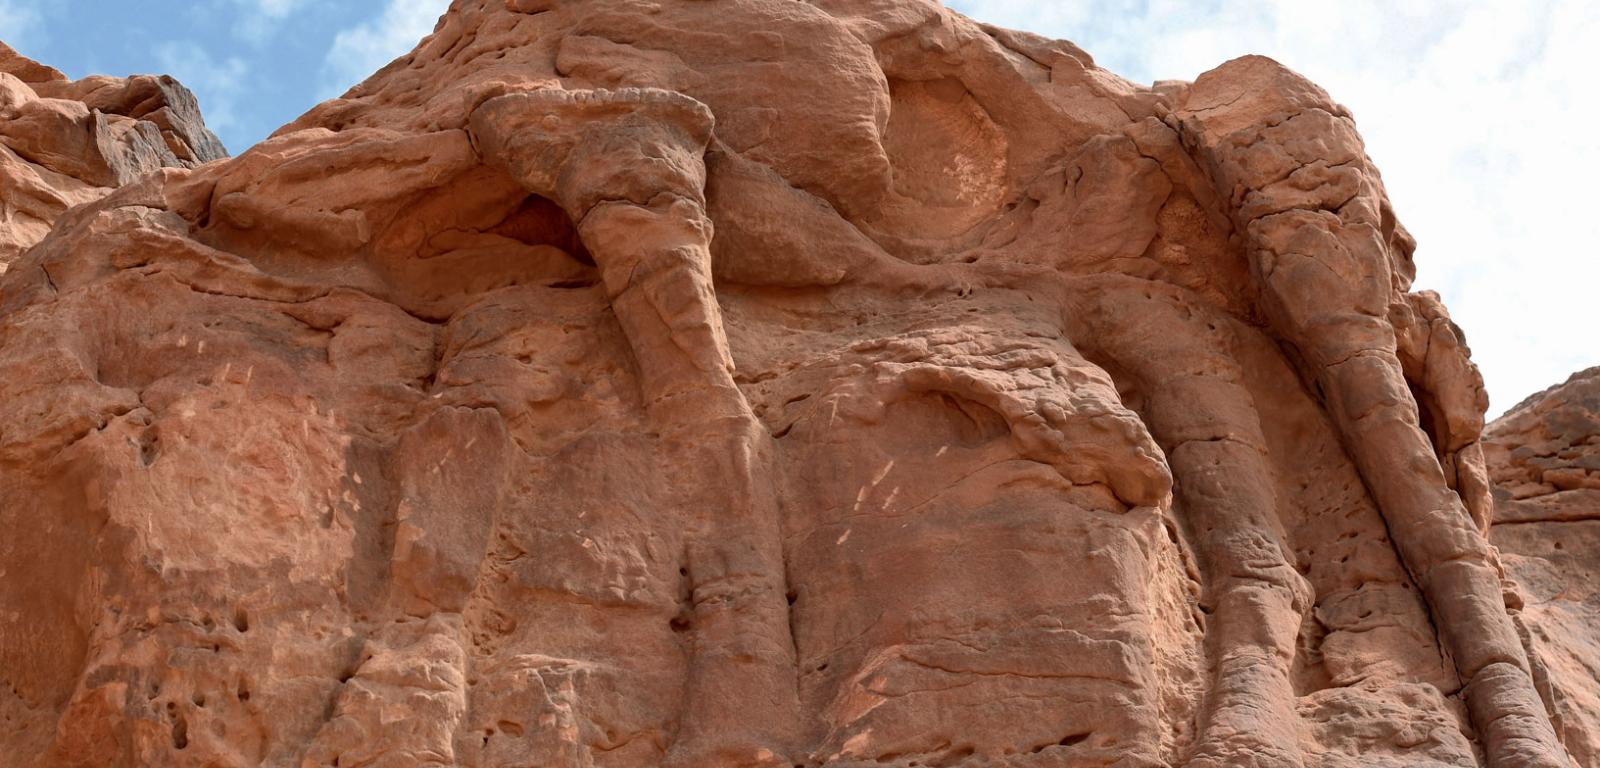 Kamienne wielbłądy wyrzeźbione co najmniej 7 tys. lat temu na północy Półwyspu Arabskiego, wówczas bardziej wilgotnego i porośniętego sawanną.